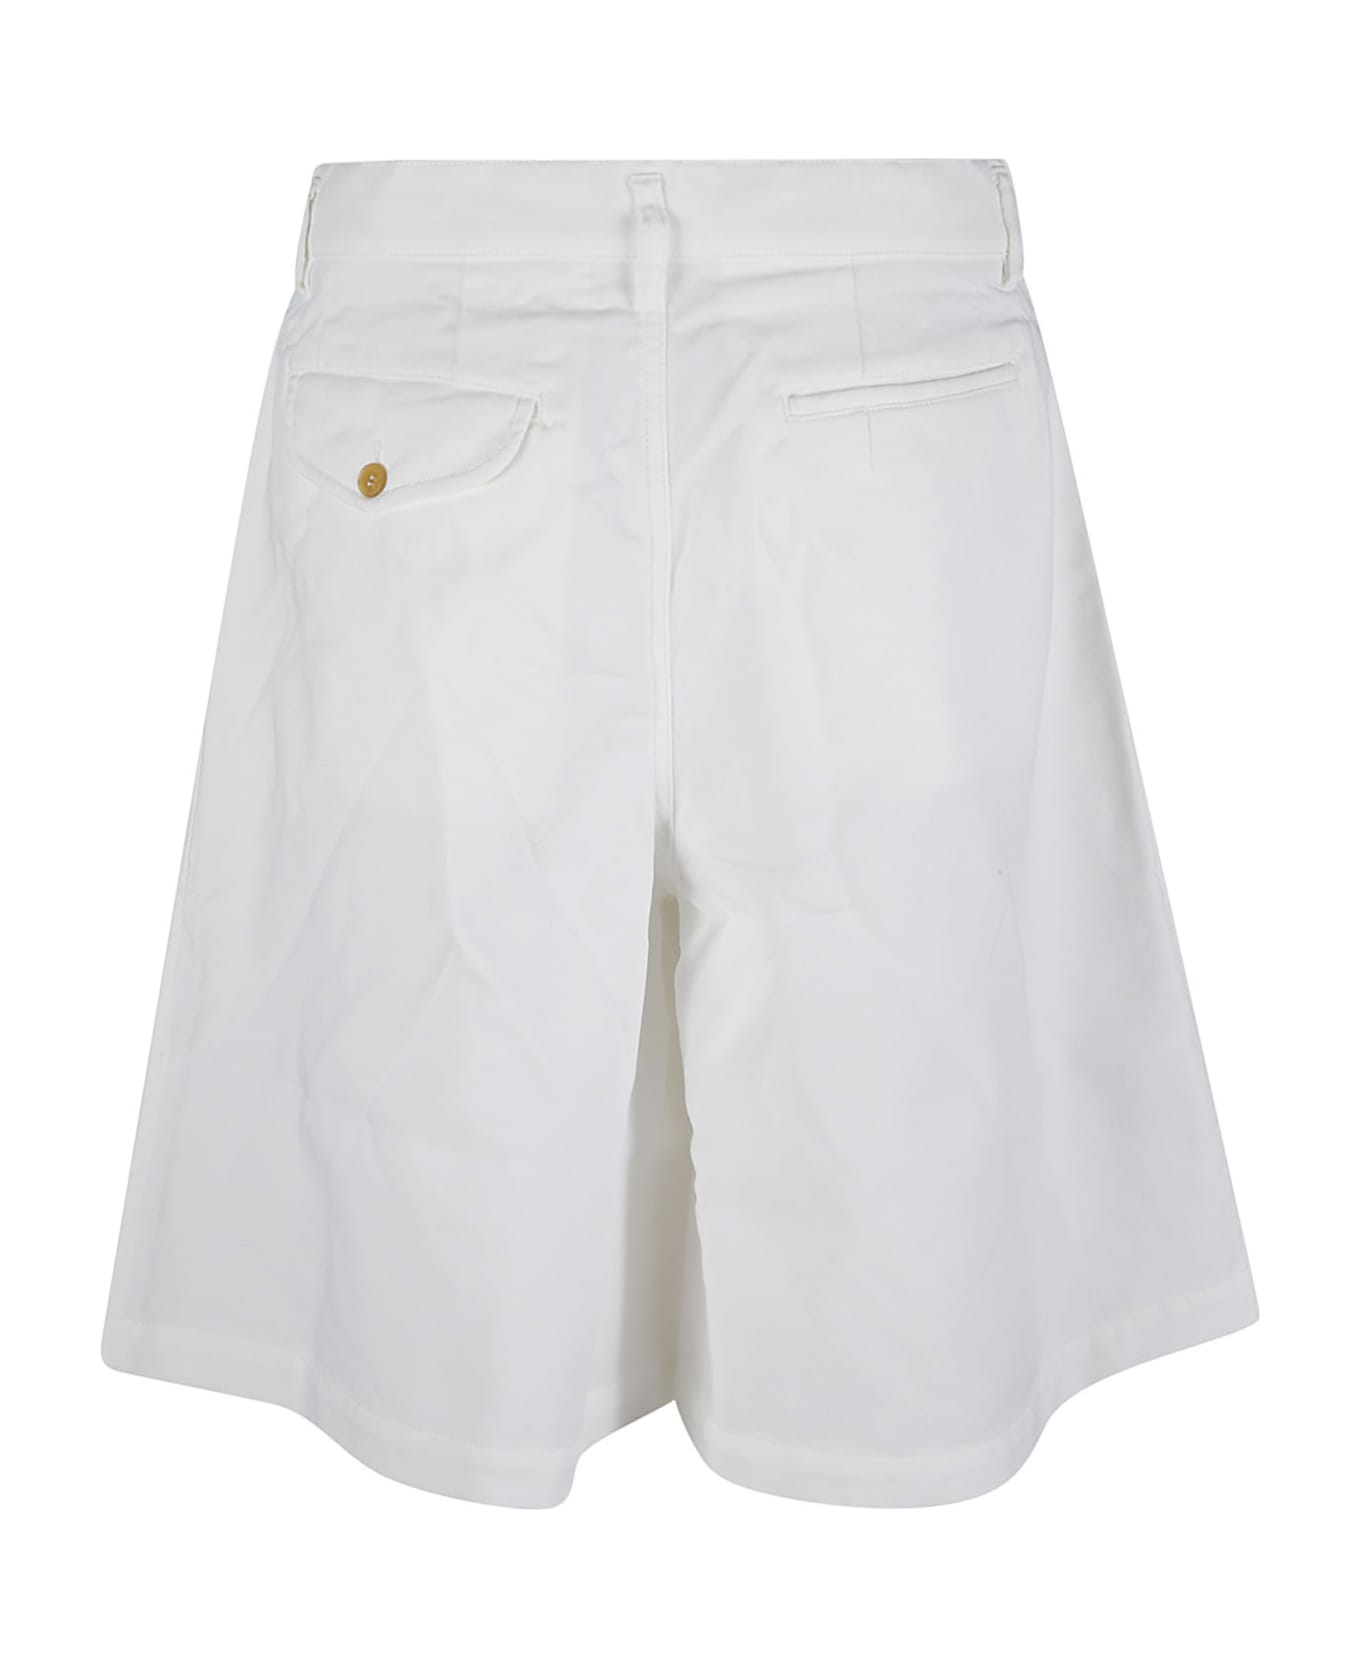 Comme des Garçons Shirt Buttoned Classic Shorts - White